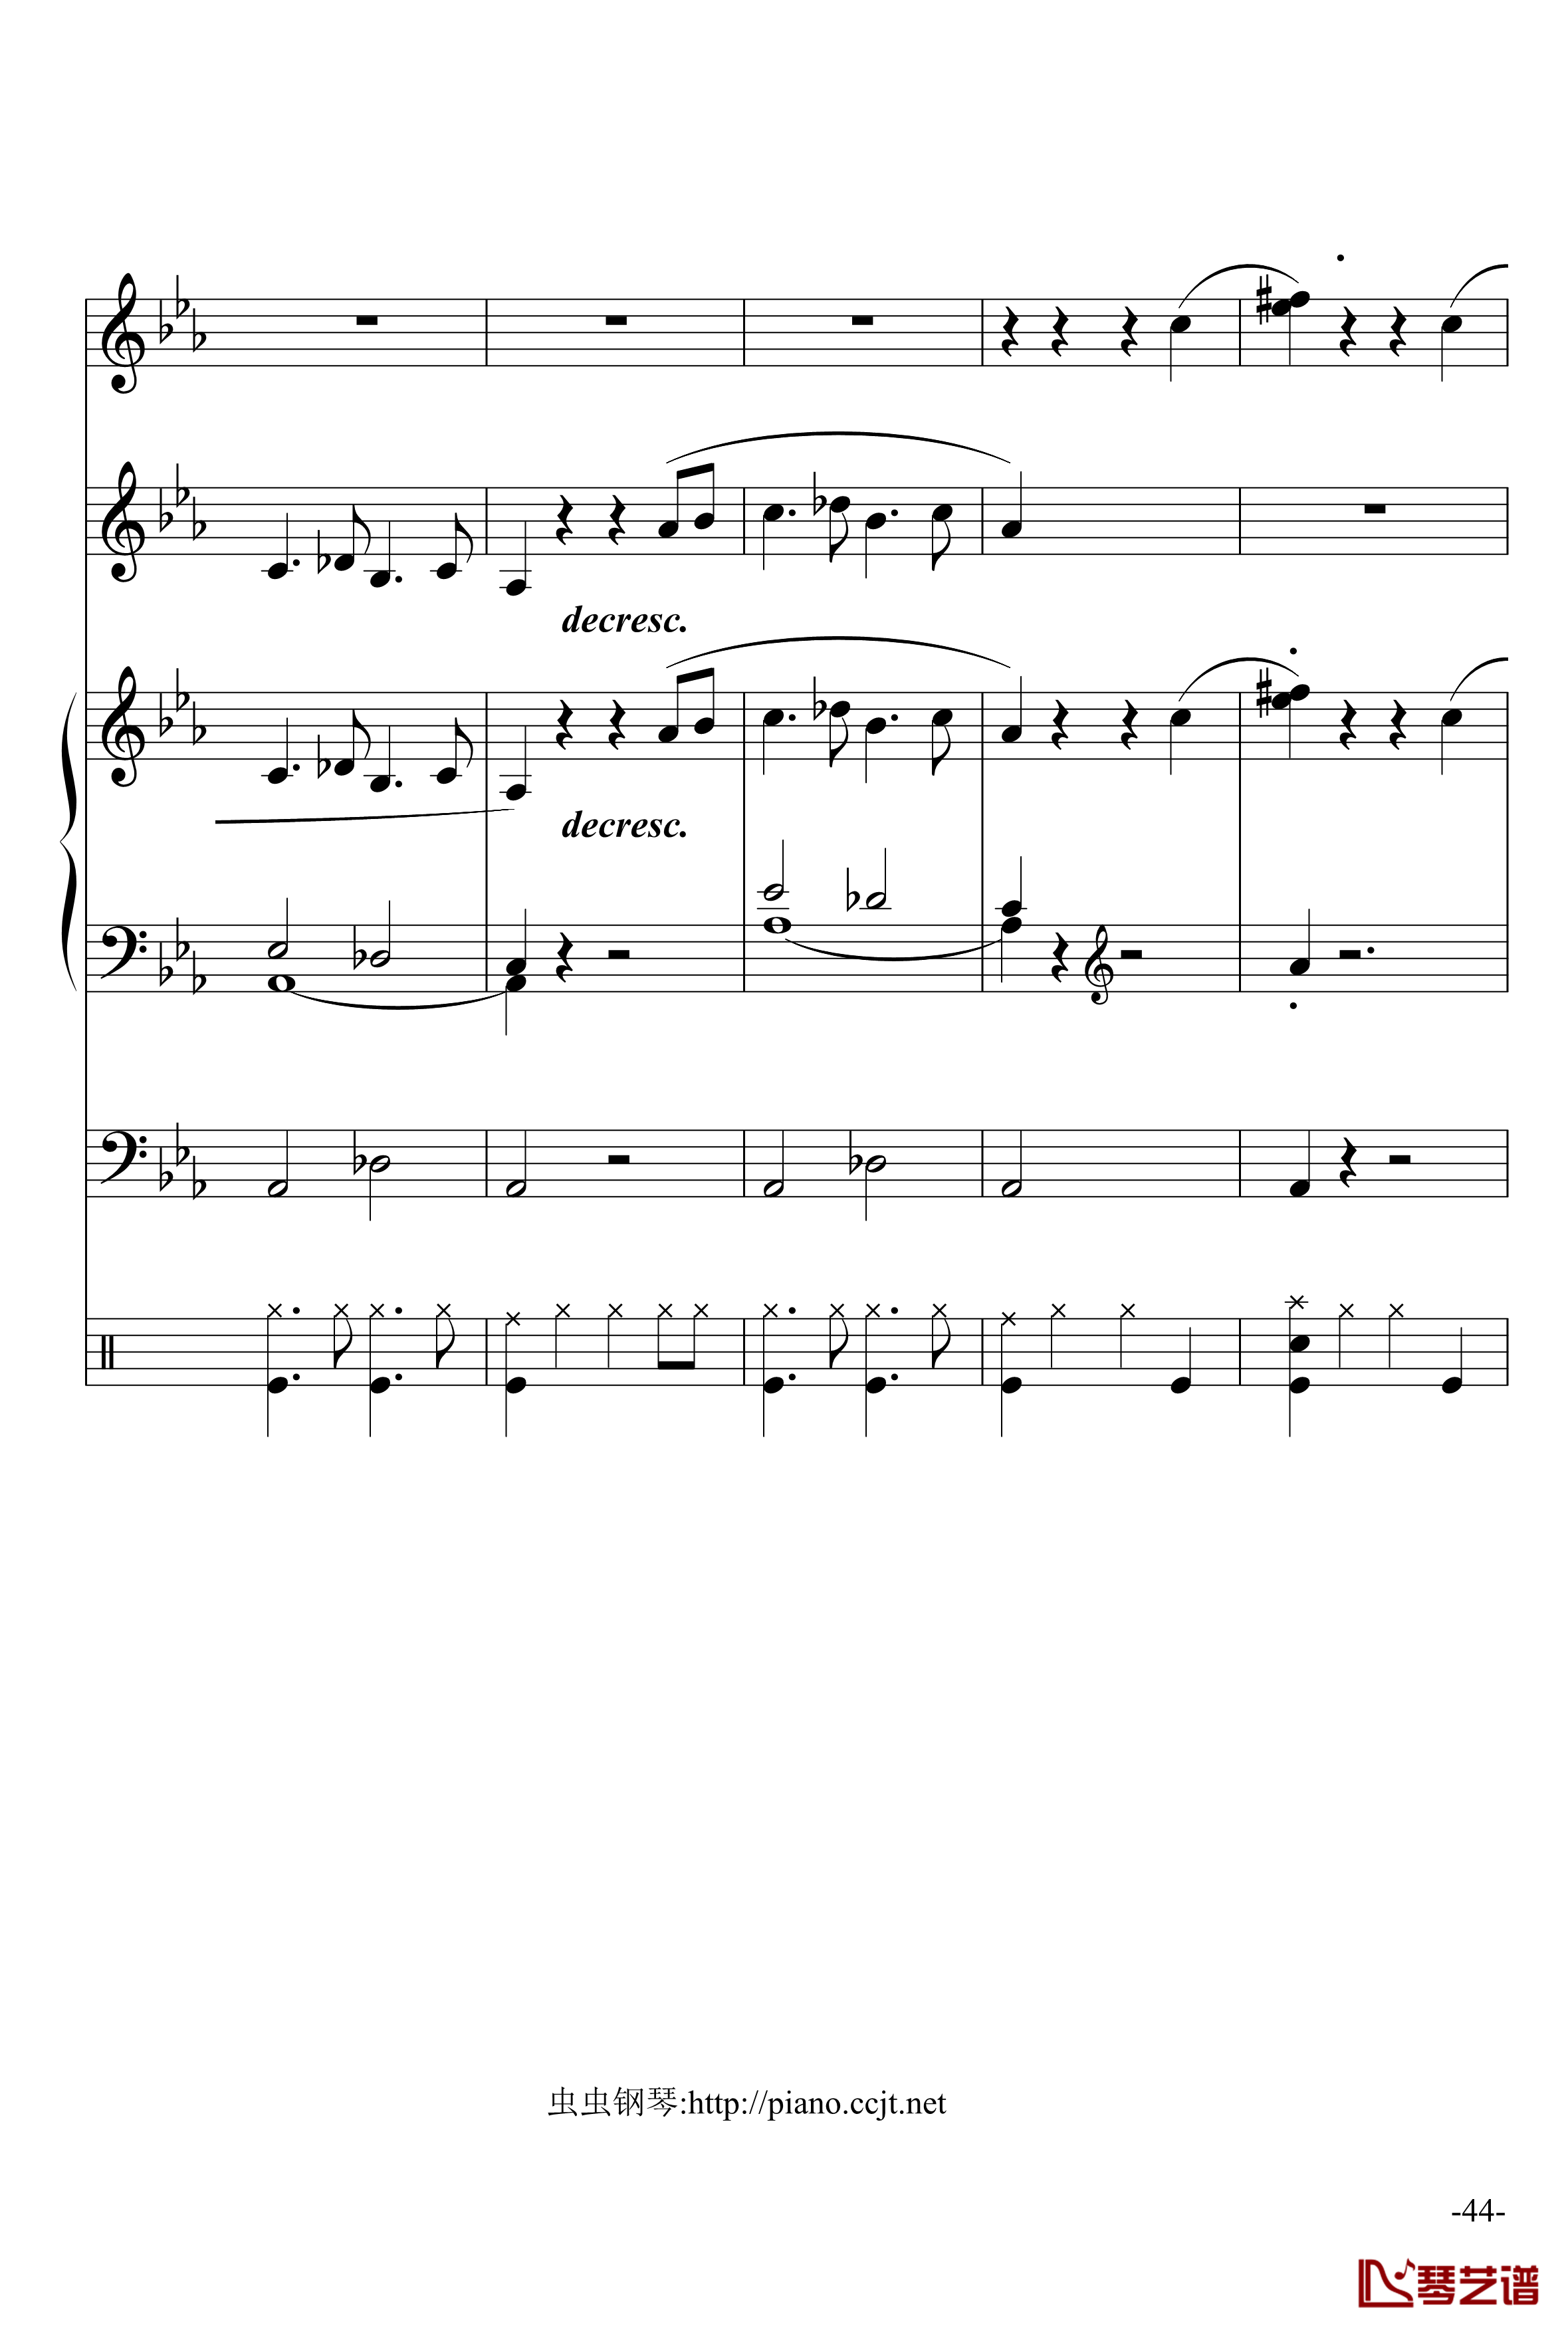 悲怆奏鸣曲钢琴谱-加小乐队-贝多芬-beethoven44